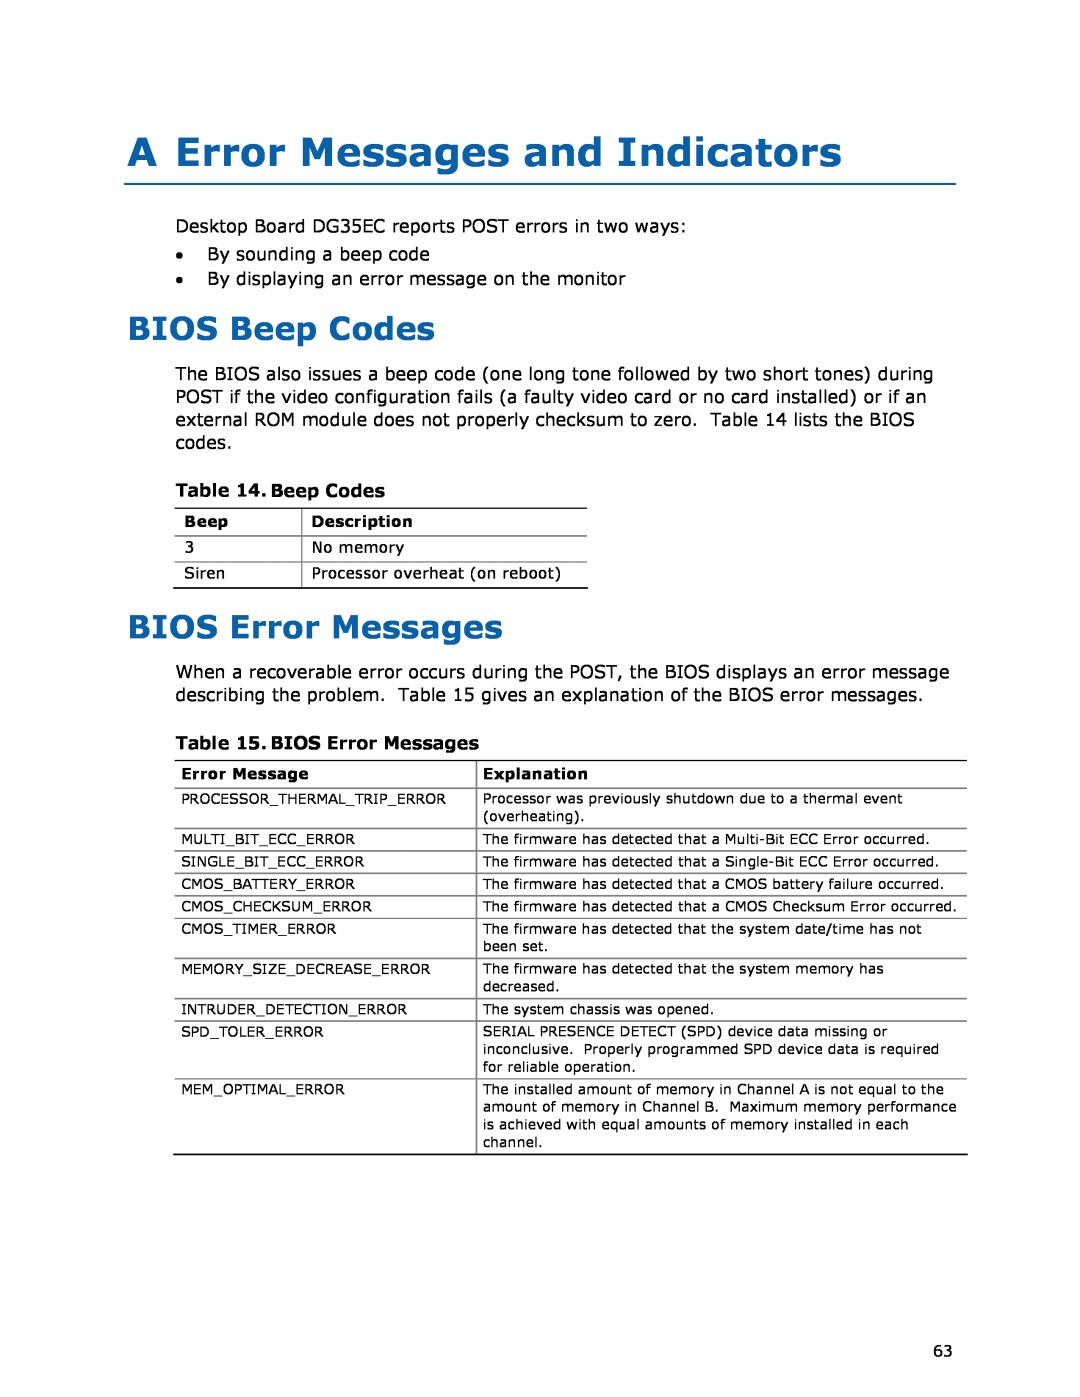 Intel DG35EC, Intel Desktop Board manual A Error Messages and Indicators, BIOS Beep Codes, BIOS Error Messages 